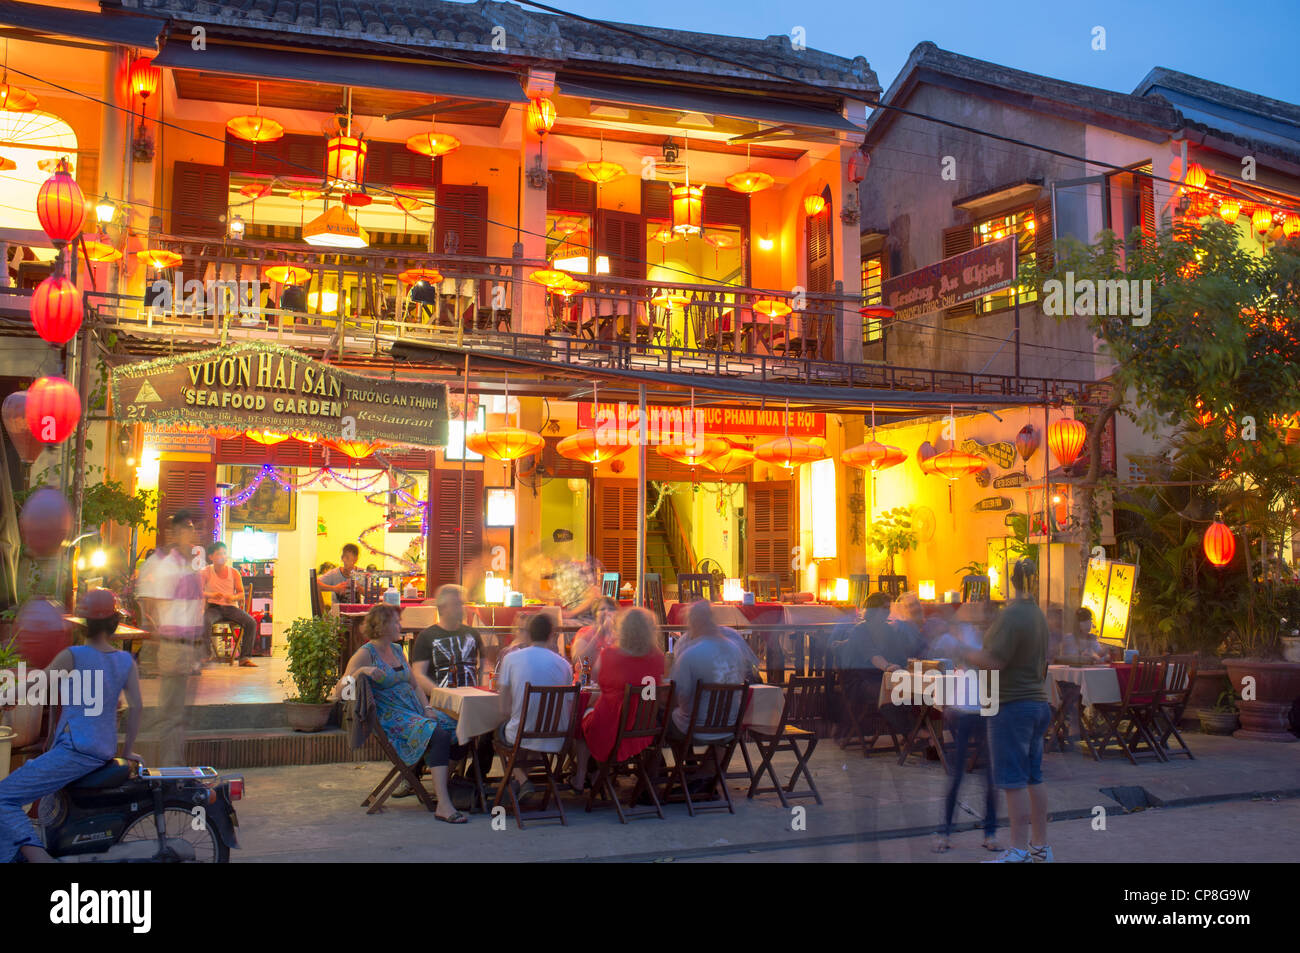 Compte tenu de soirée restaurant touristique en patrimoine de l'UNESCO ville de Hoi An au Vietnam Banque D'Images